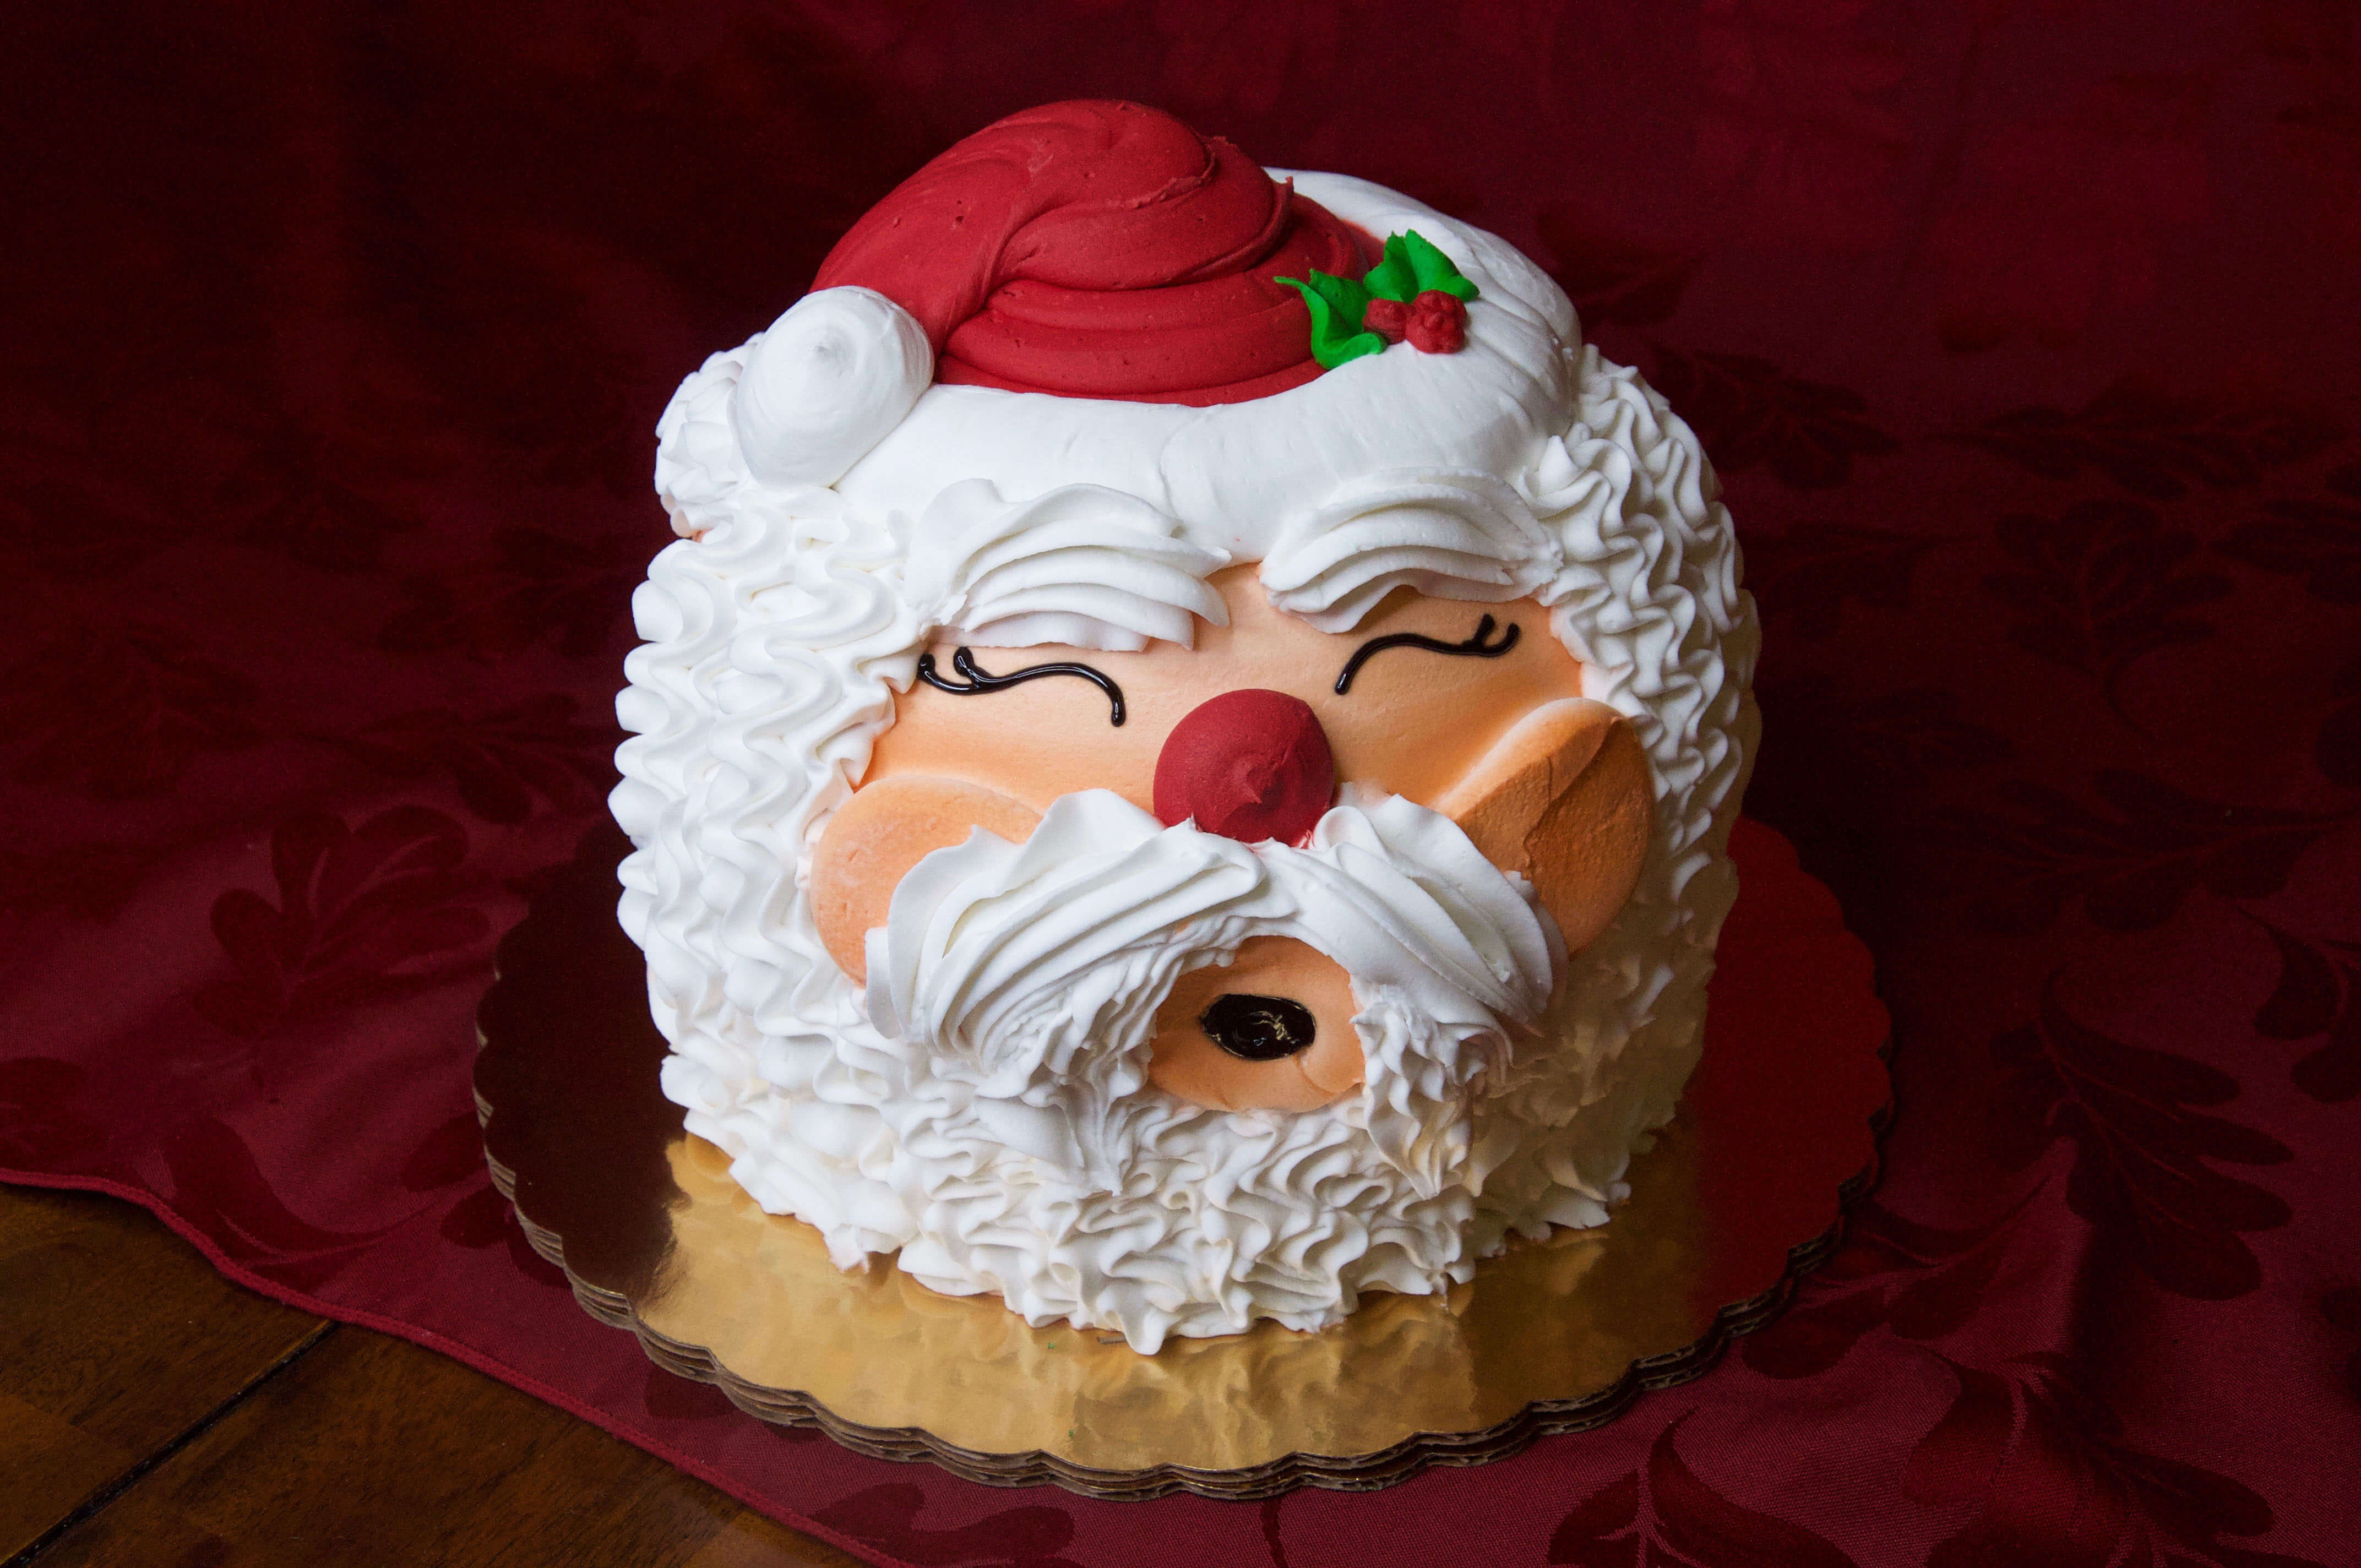 Santa Claus Cake Recipe - Pillsbury.com